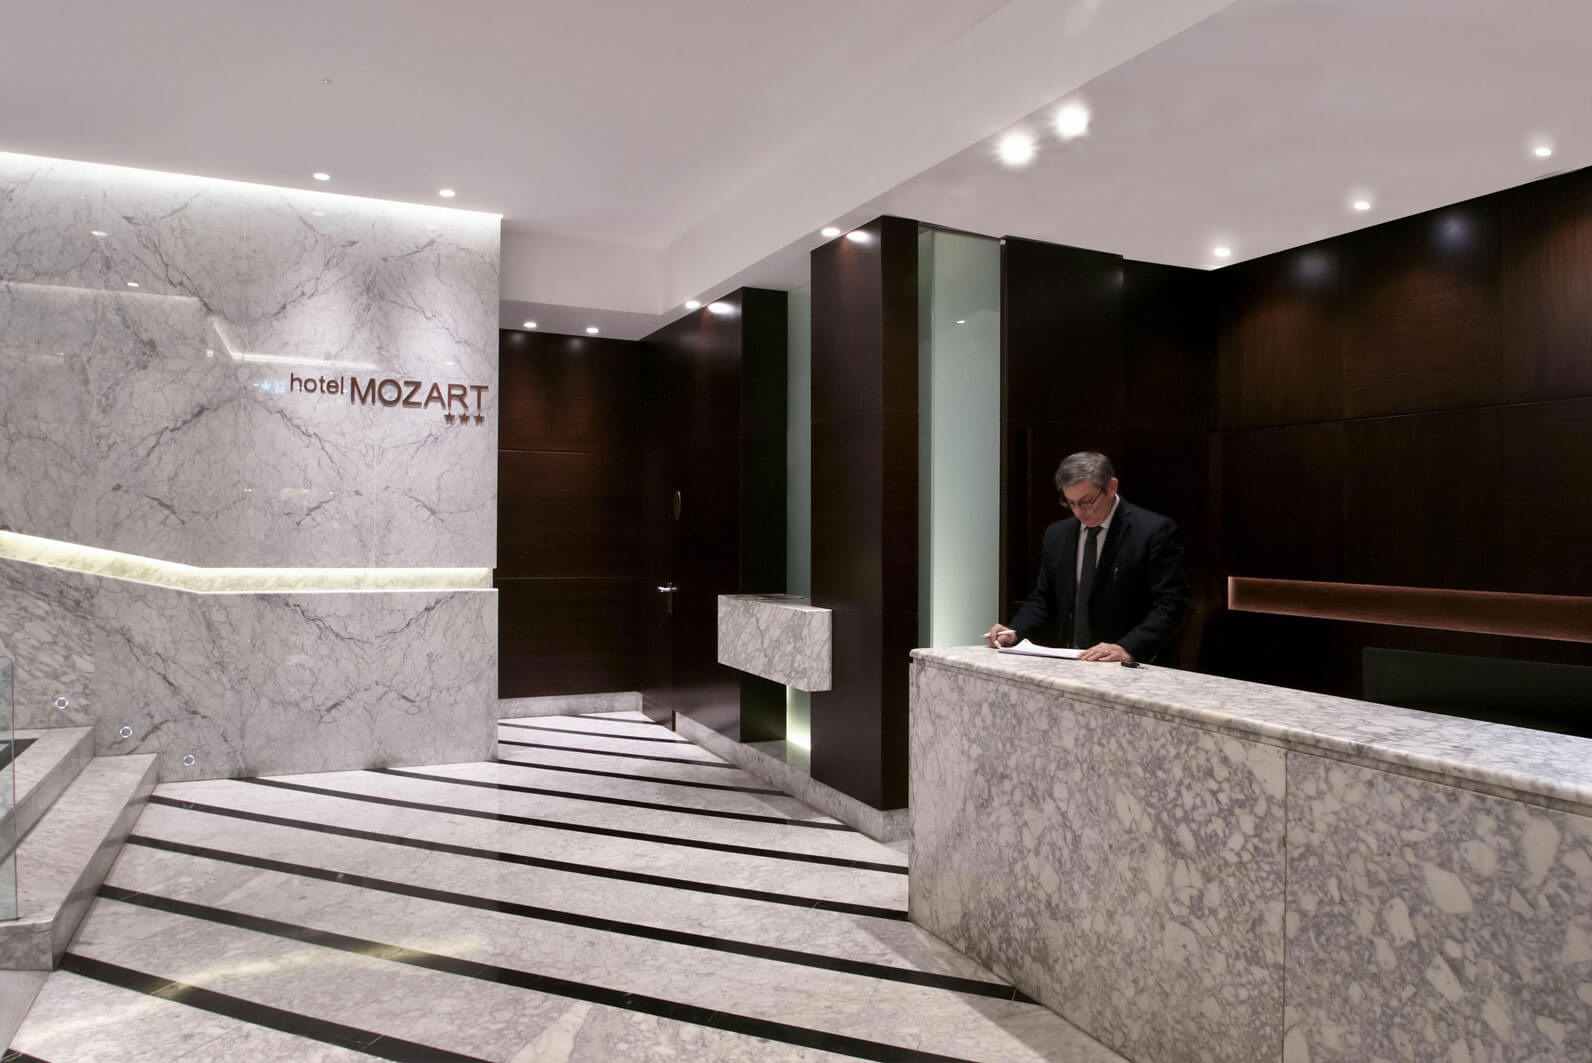 Recepcion doble del Hotel Mozart en el centro de Valladolid